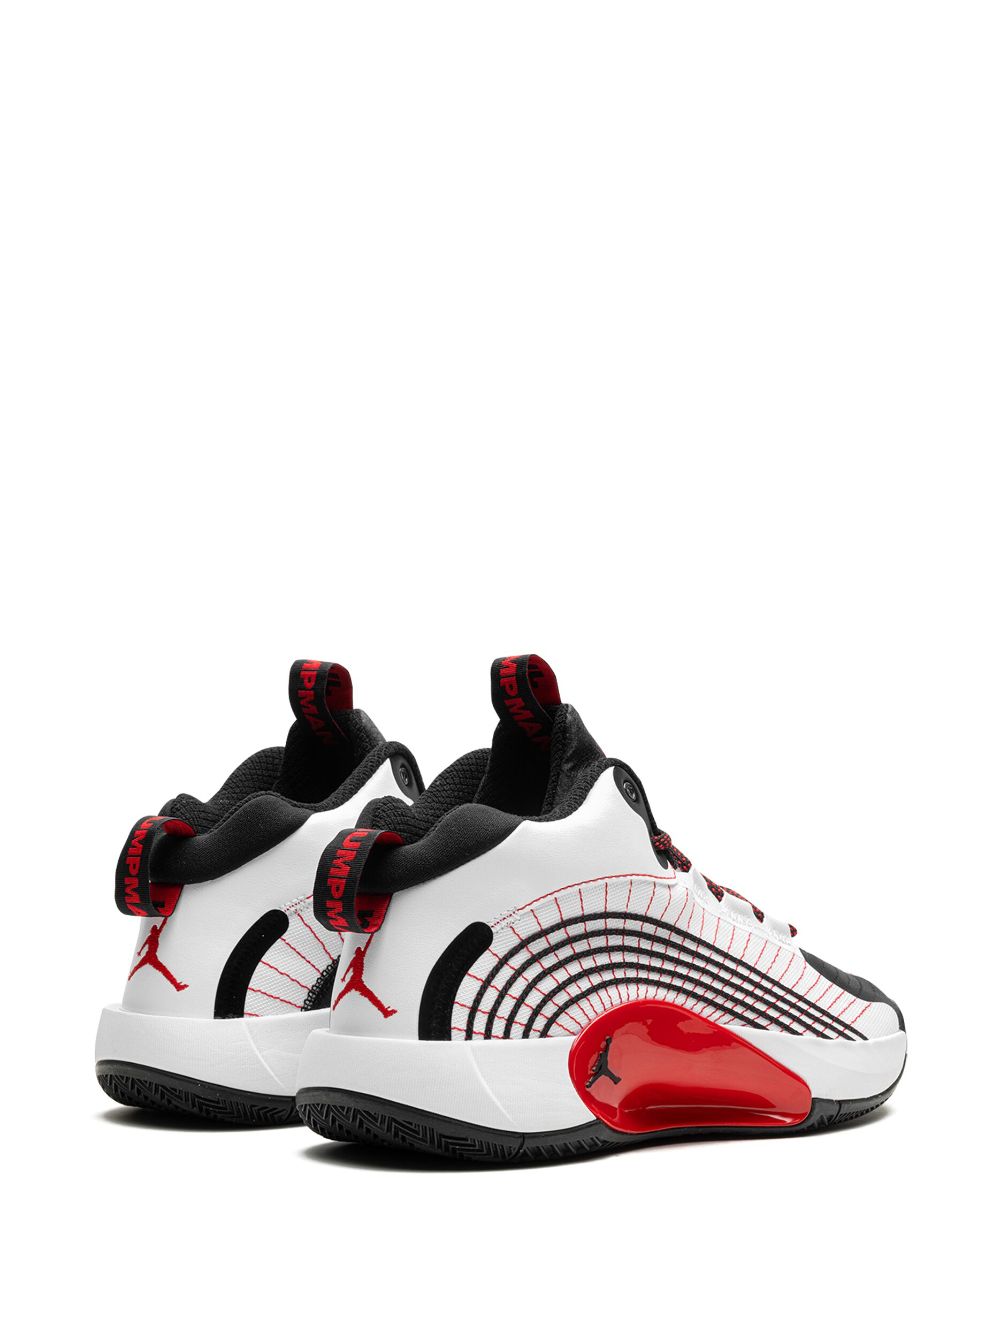 Jordan Jumpman 2021 "White University Red" sneakers